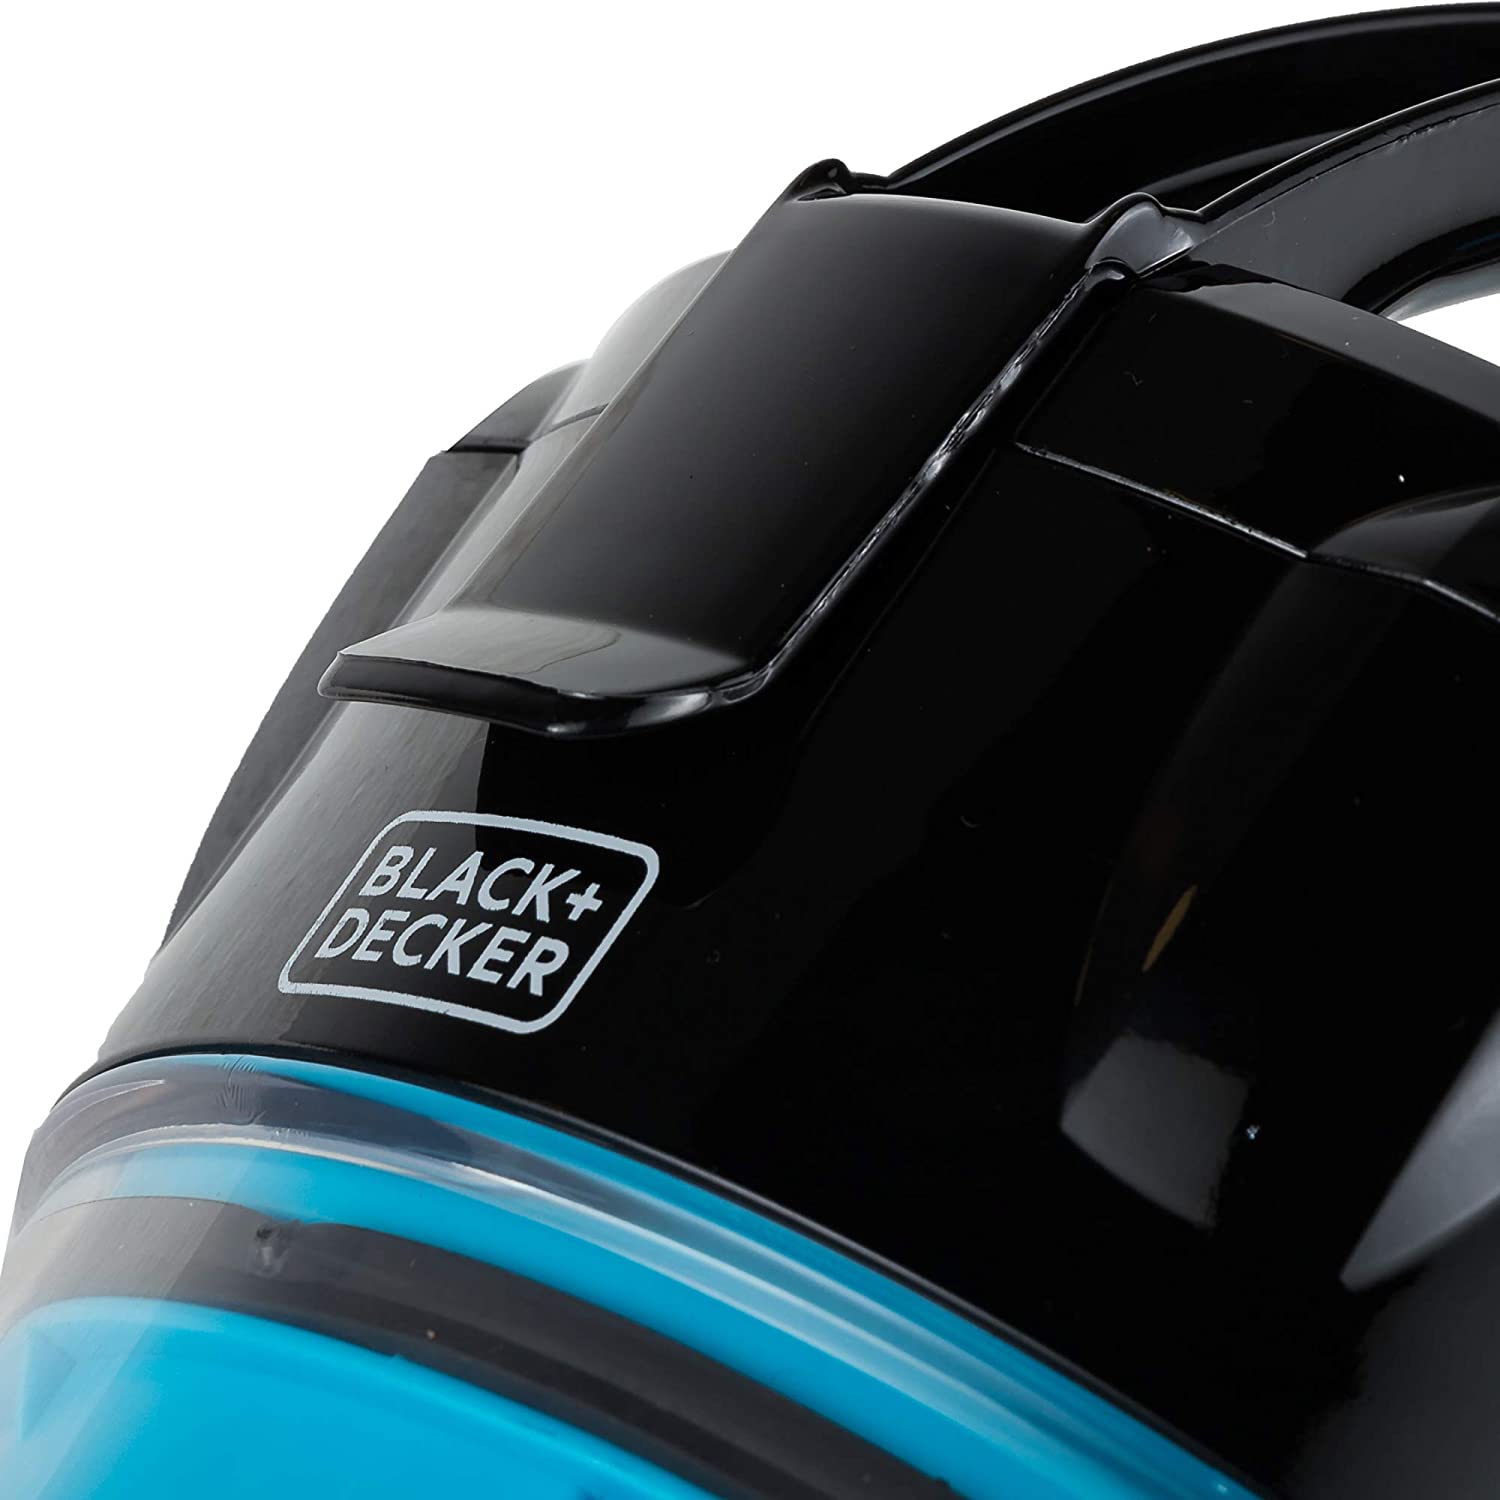 BLACK+DECKER 2000W 2.5L Corded Vacuum Cleaner 21KPa  مكنسة كهربائية بسلك 2000 واط 2.5 لتر بقوة شفط 21 كيلو باسكال